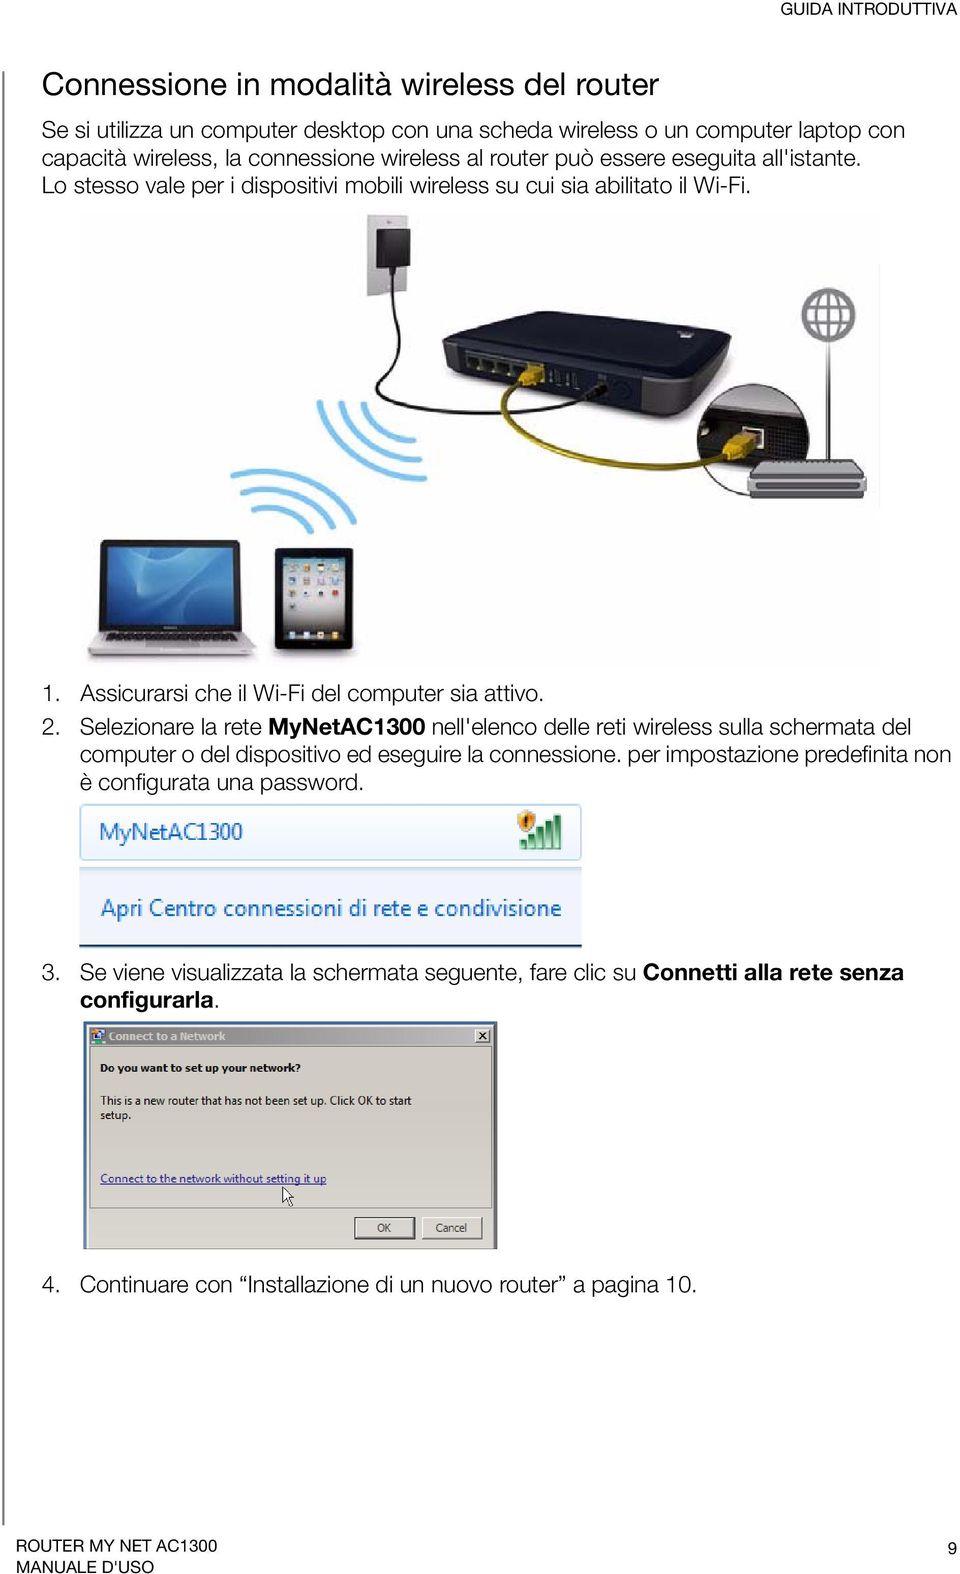 2. Selezionare la rete MyNetAC1300 nell'elenco delle reti wireless sulla schermata del computer o del dispositivo ed eseguire la connessione.